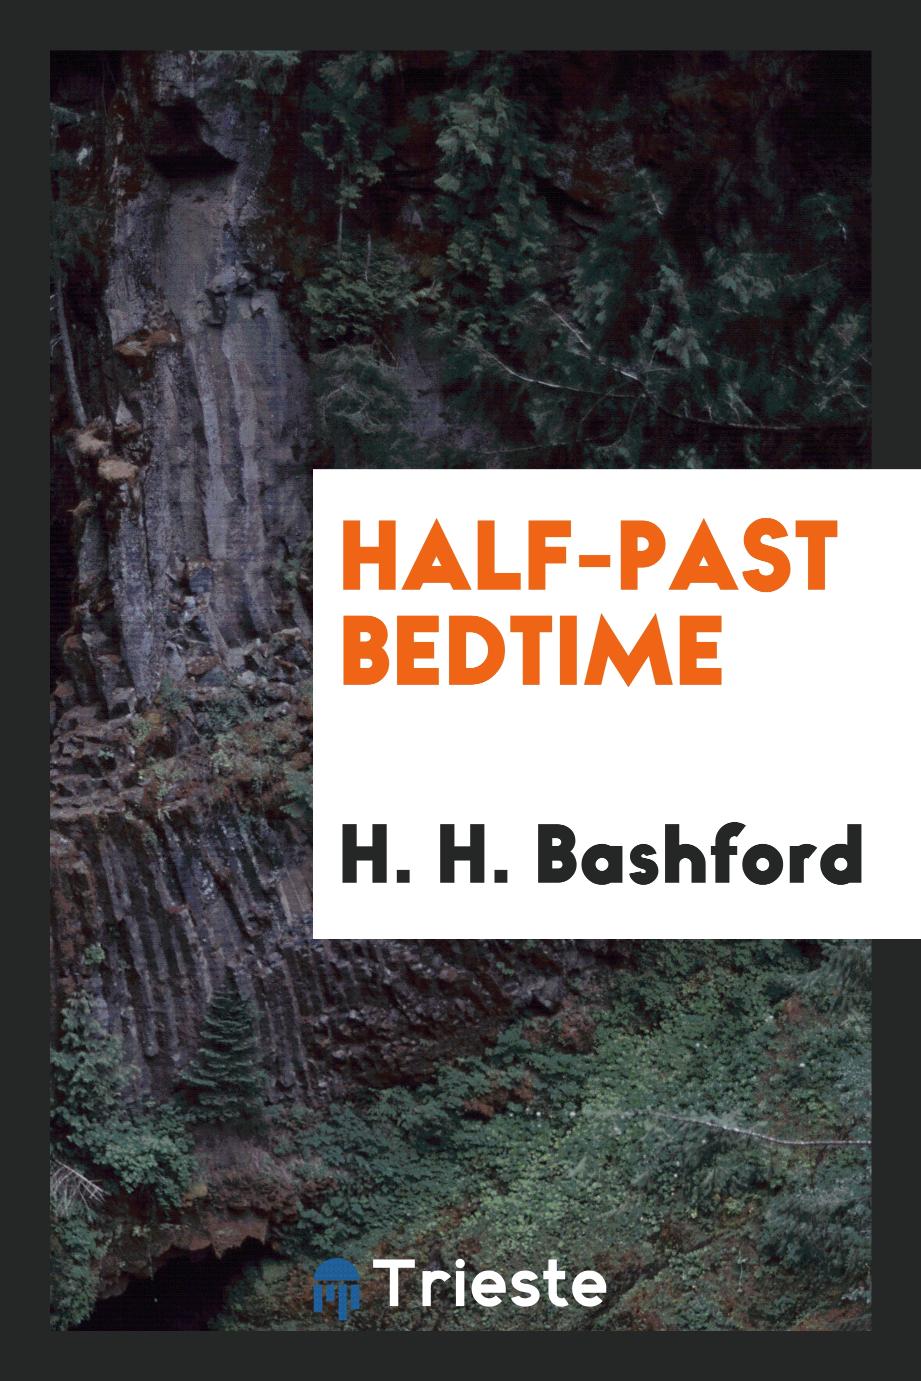 Half-past bedtime